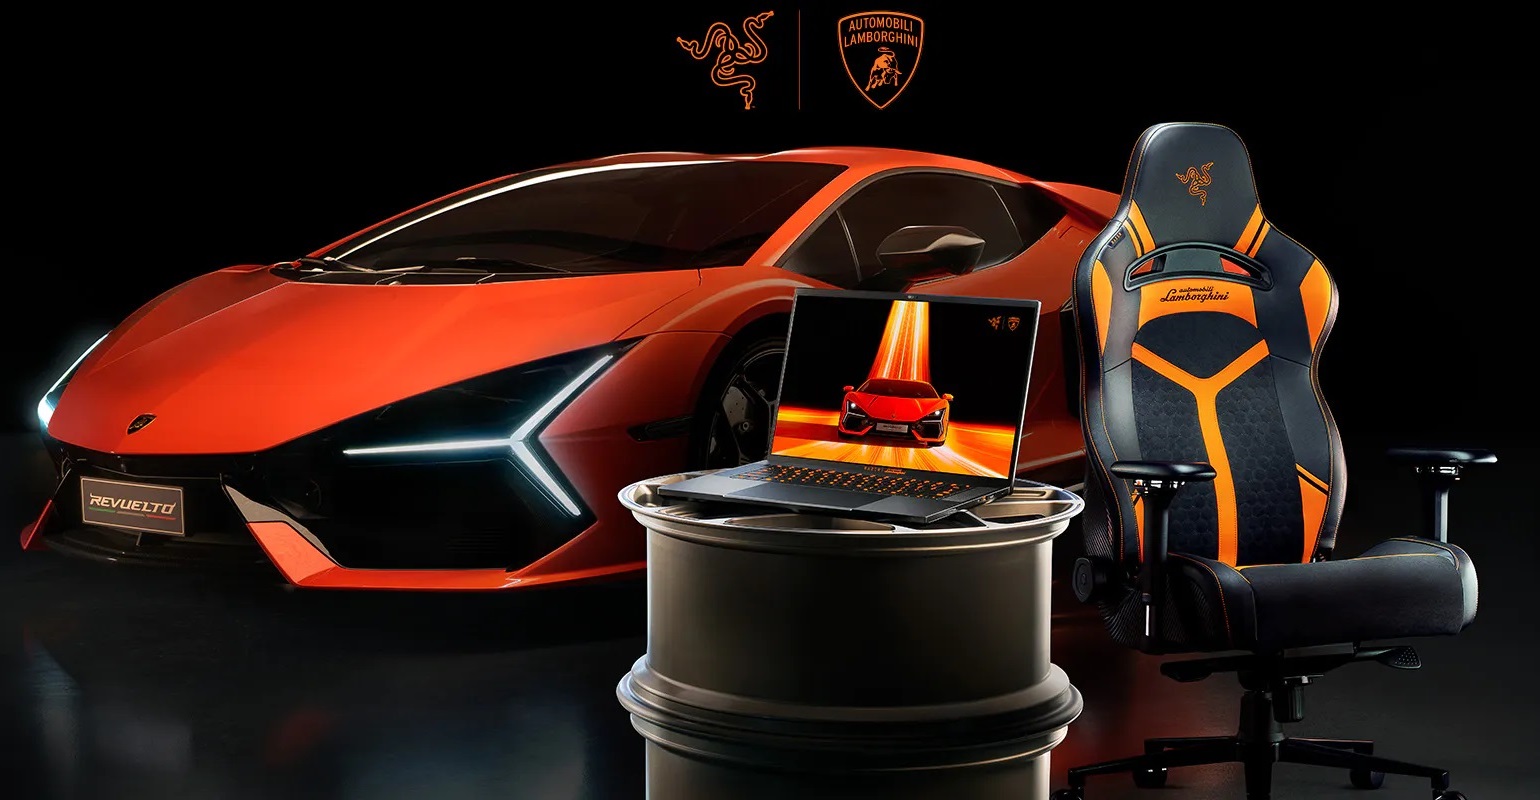 Razer and Lamborghini have unveiled the Razer Blade 16 x Automobili Lamborghini Edition laptop for $5000